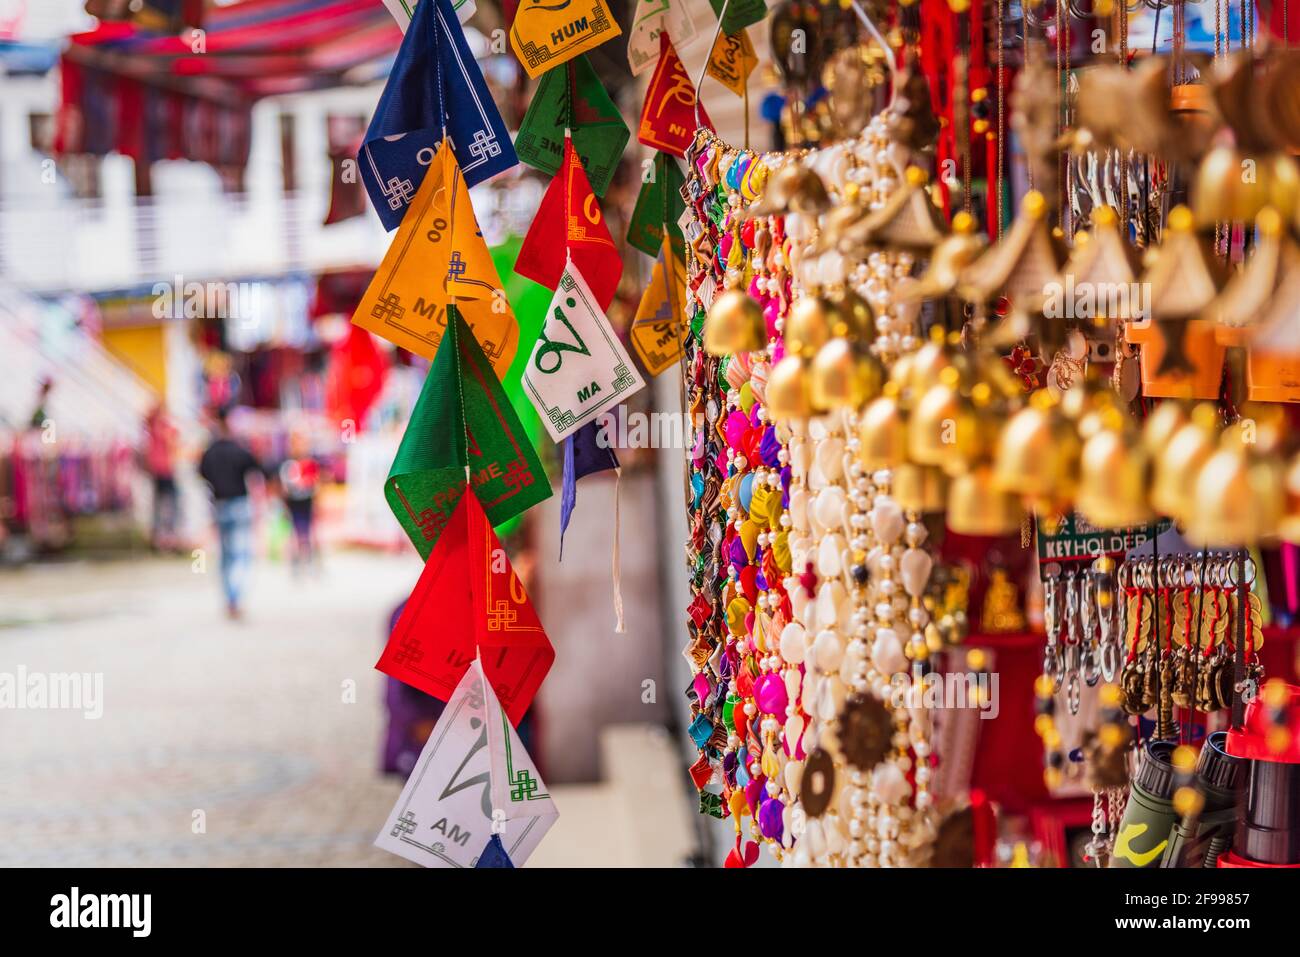 Bandiere di preghiera colorate con mantra 'Om mani Padme Hum' in Sanscrito che significa compassione, etica, pazienza, diligenza, rinuncia e saggezza in inglese Foto Stock